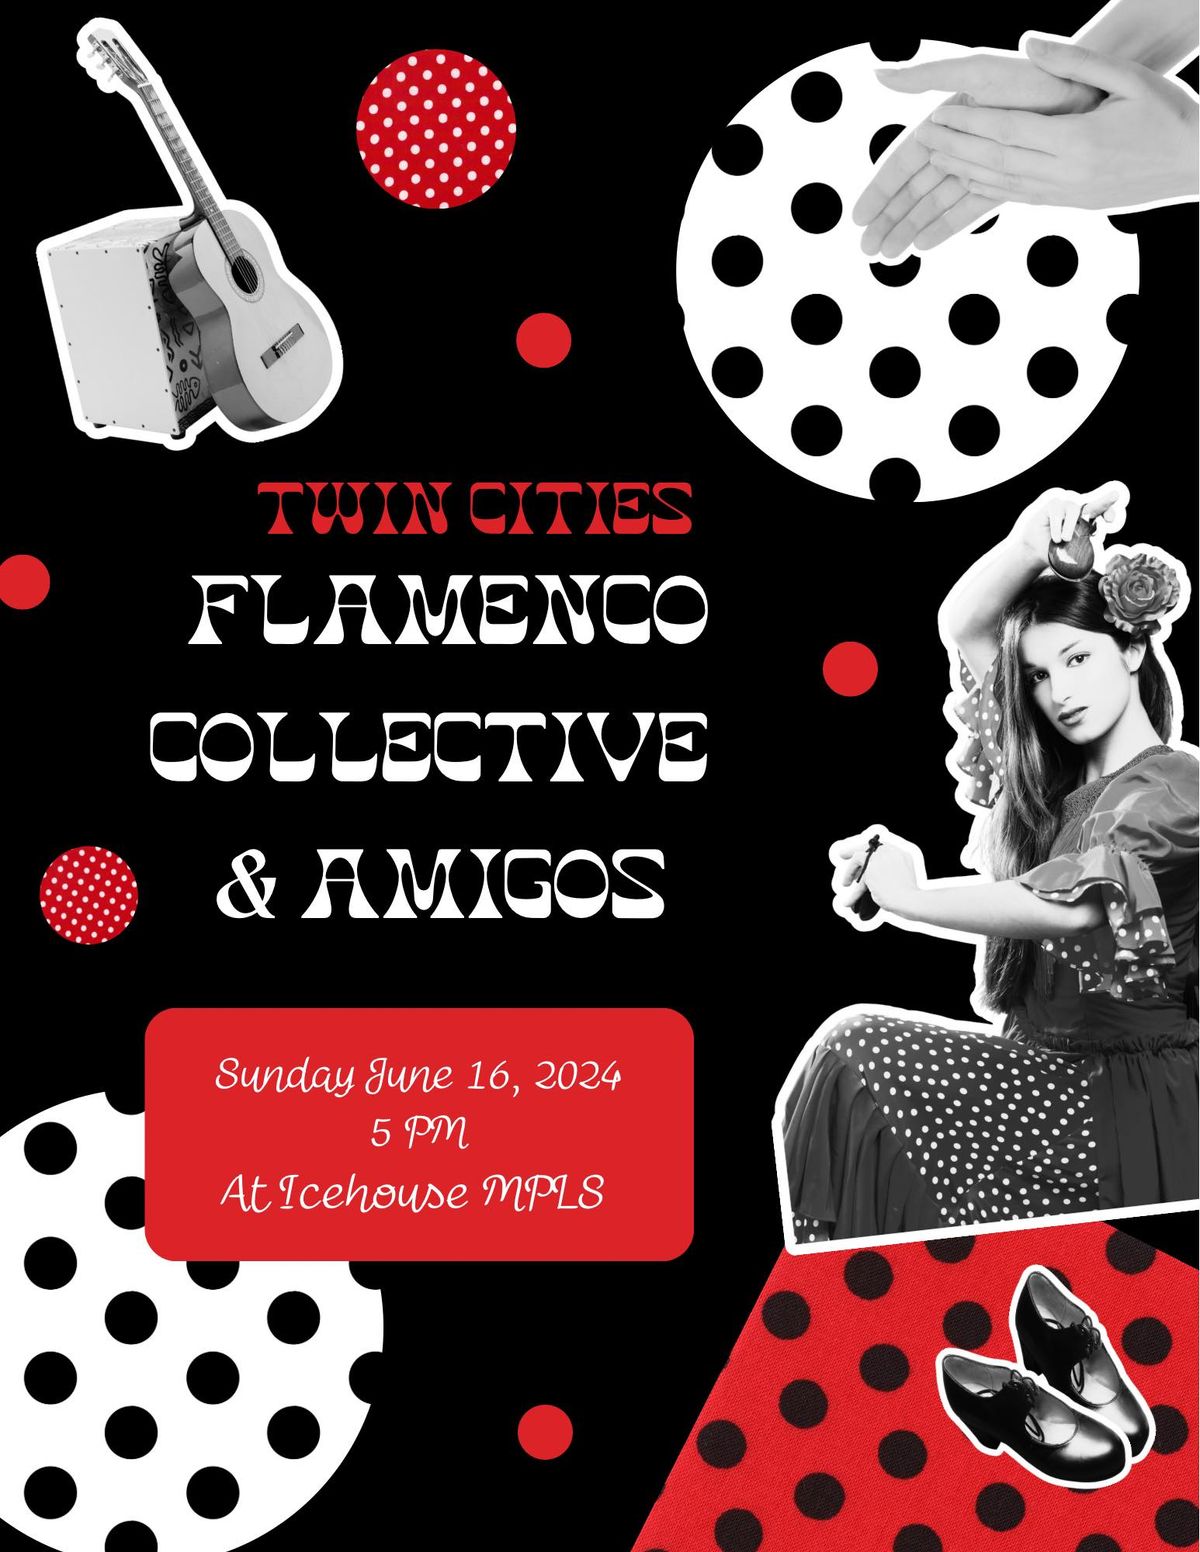 Twin Cities Flamenco Collective & Amigos